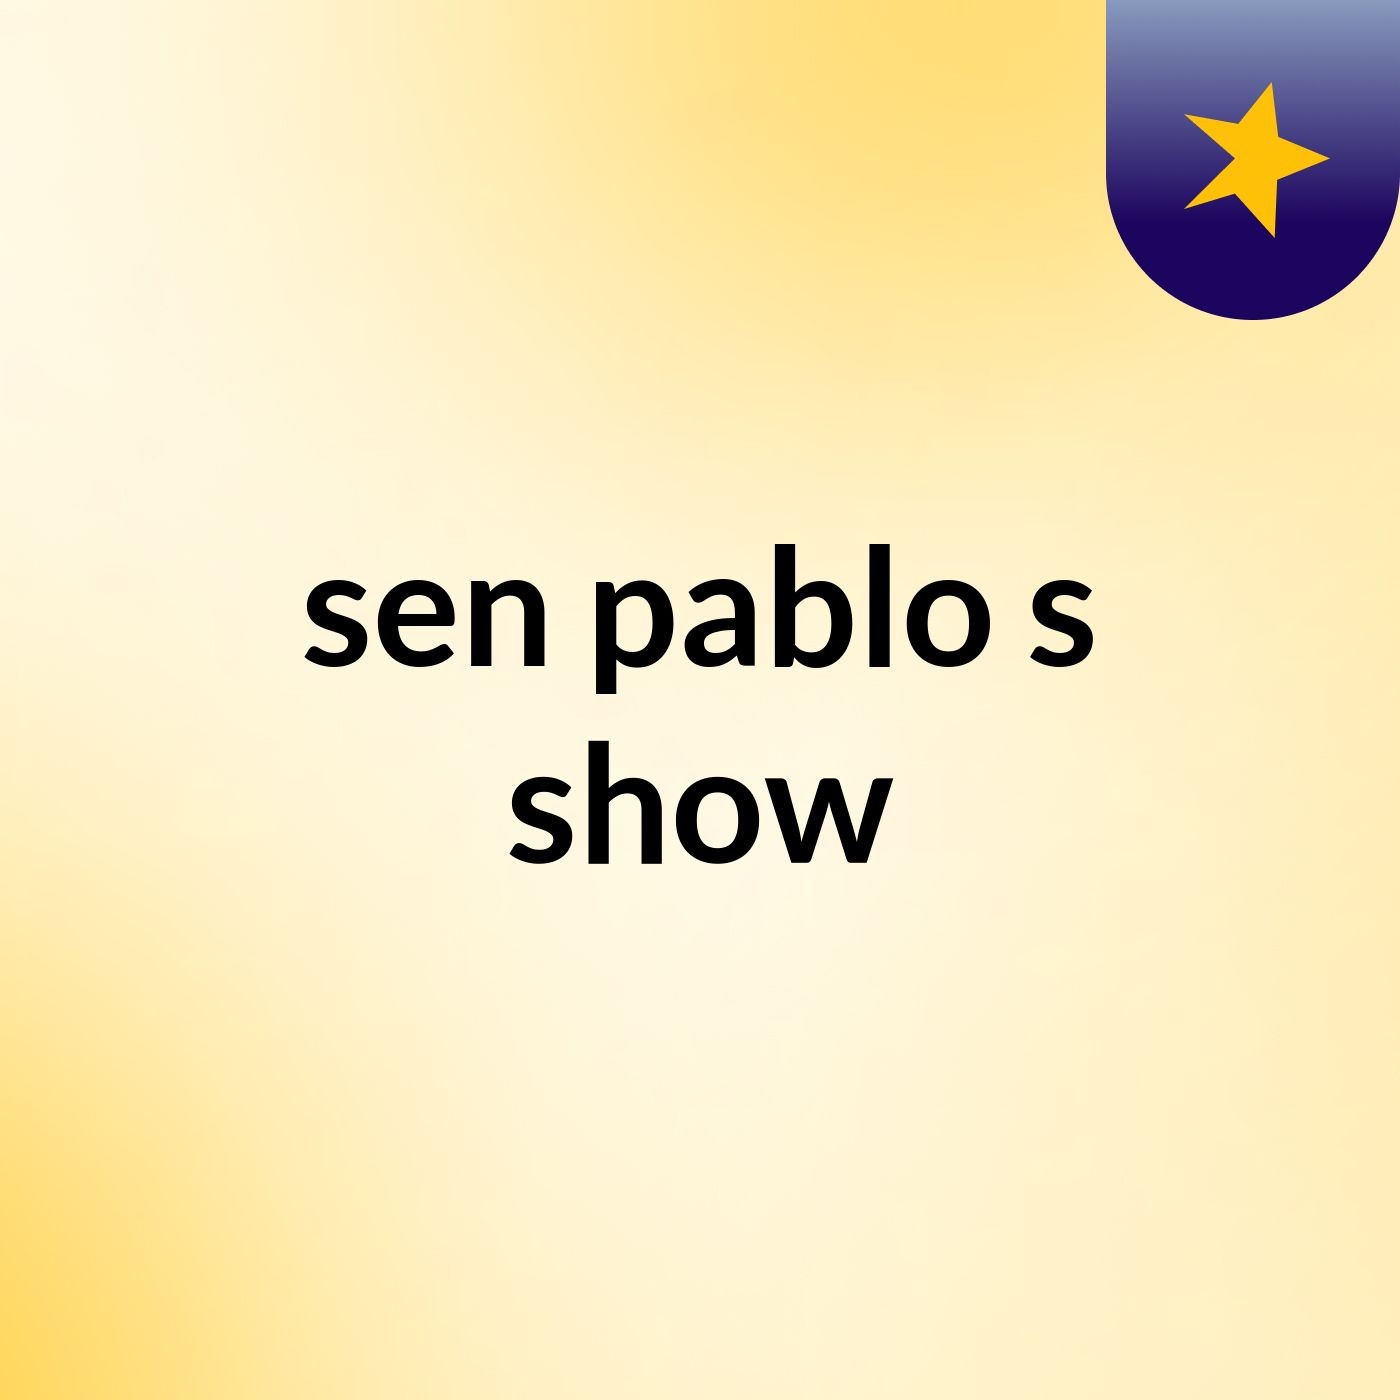 sen pablo's show